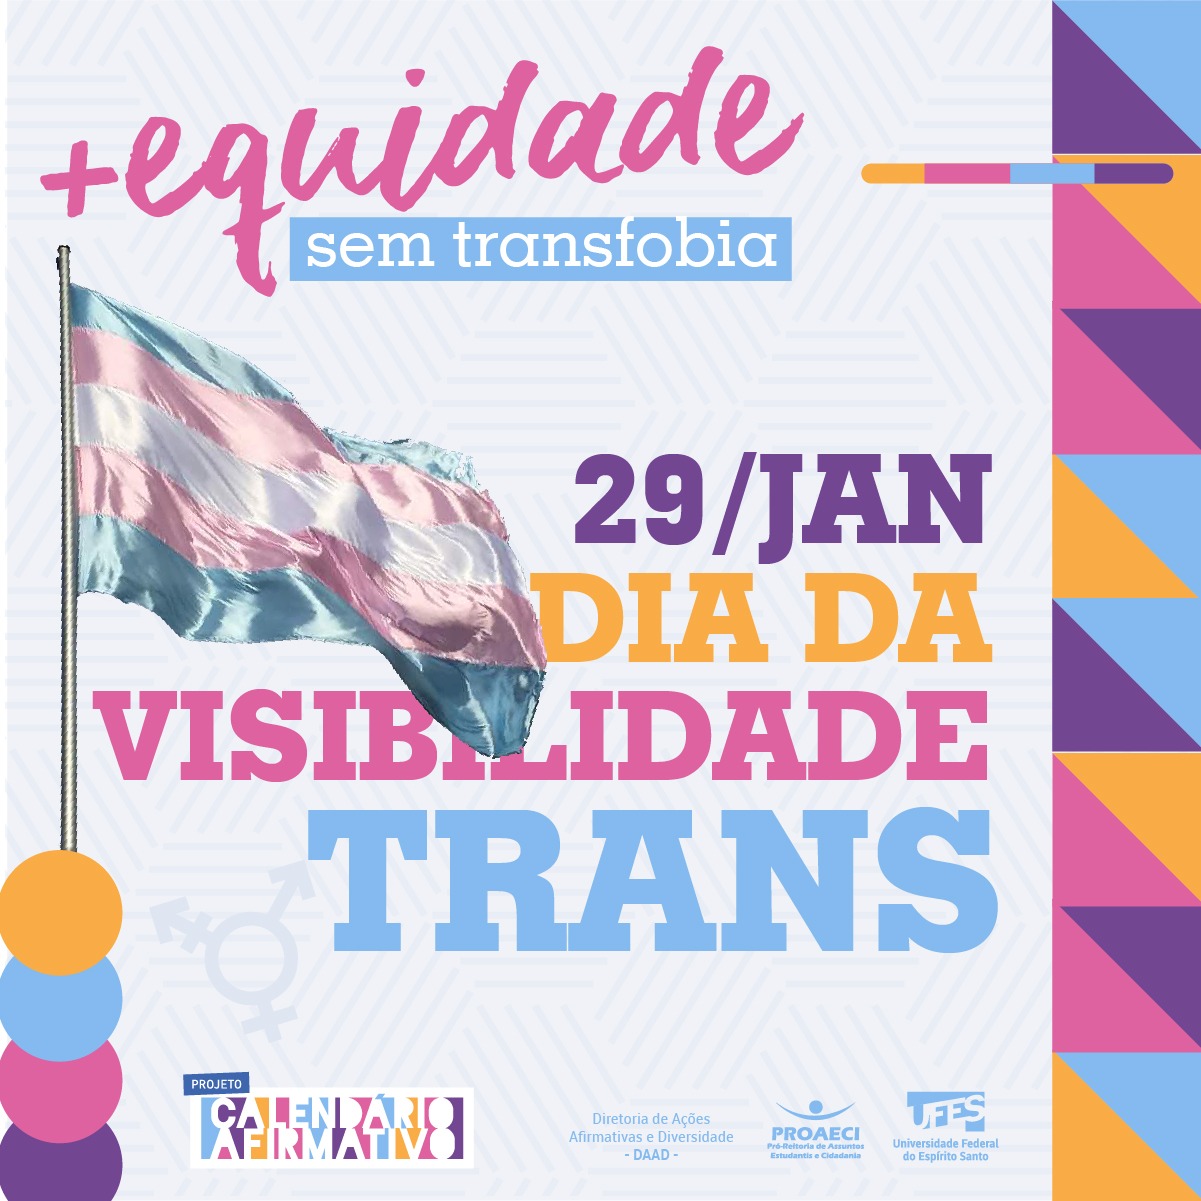 Hucam celebra Dia da Visibilidade Trans — Empresa Brasileira de